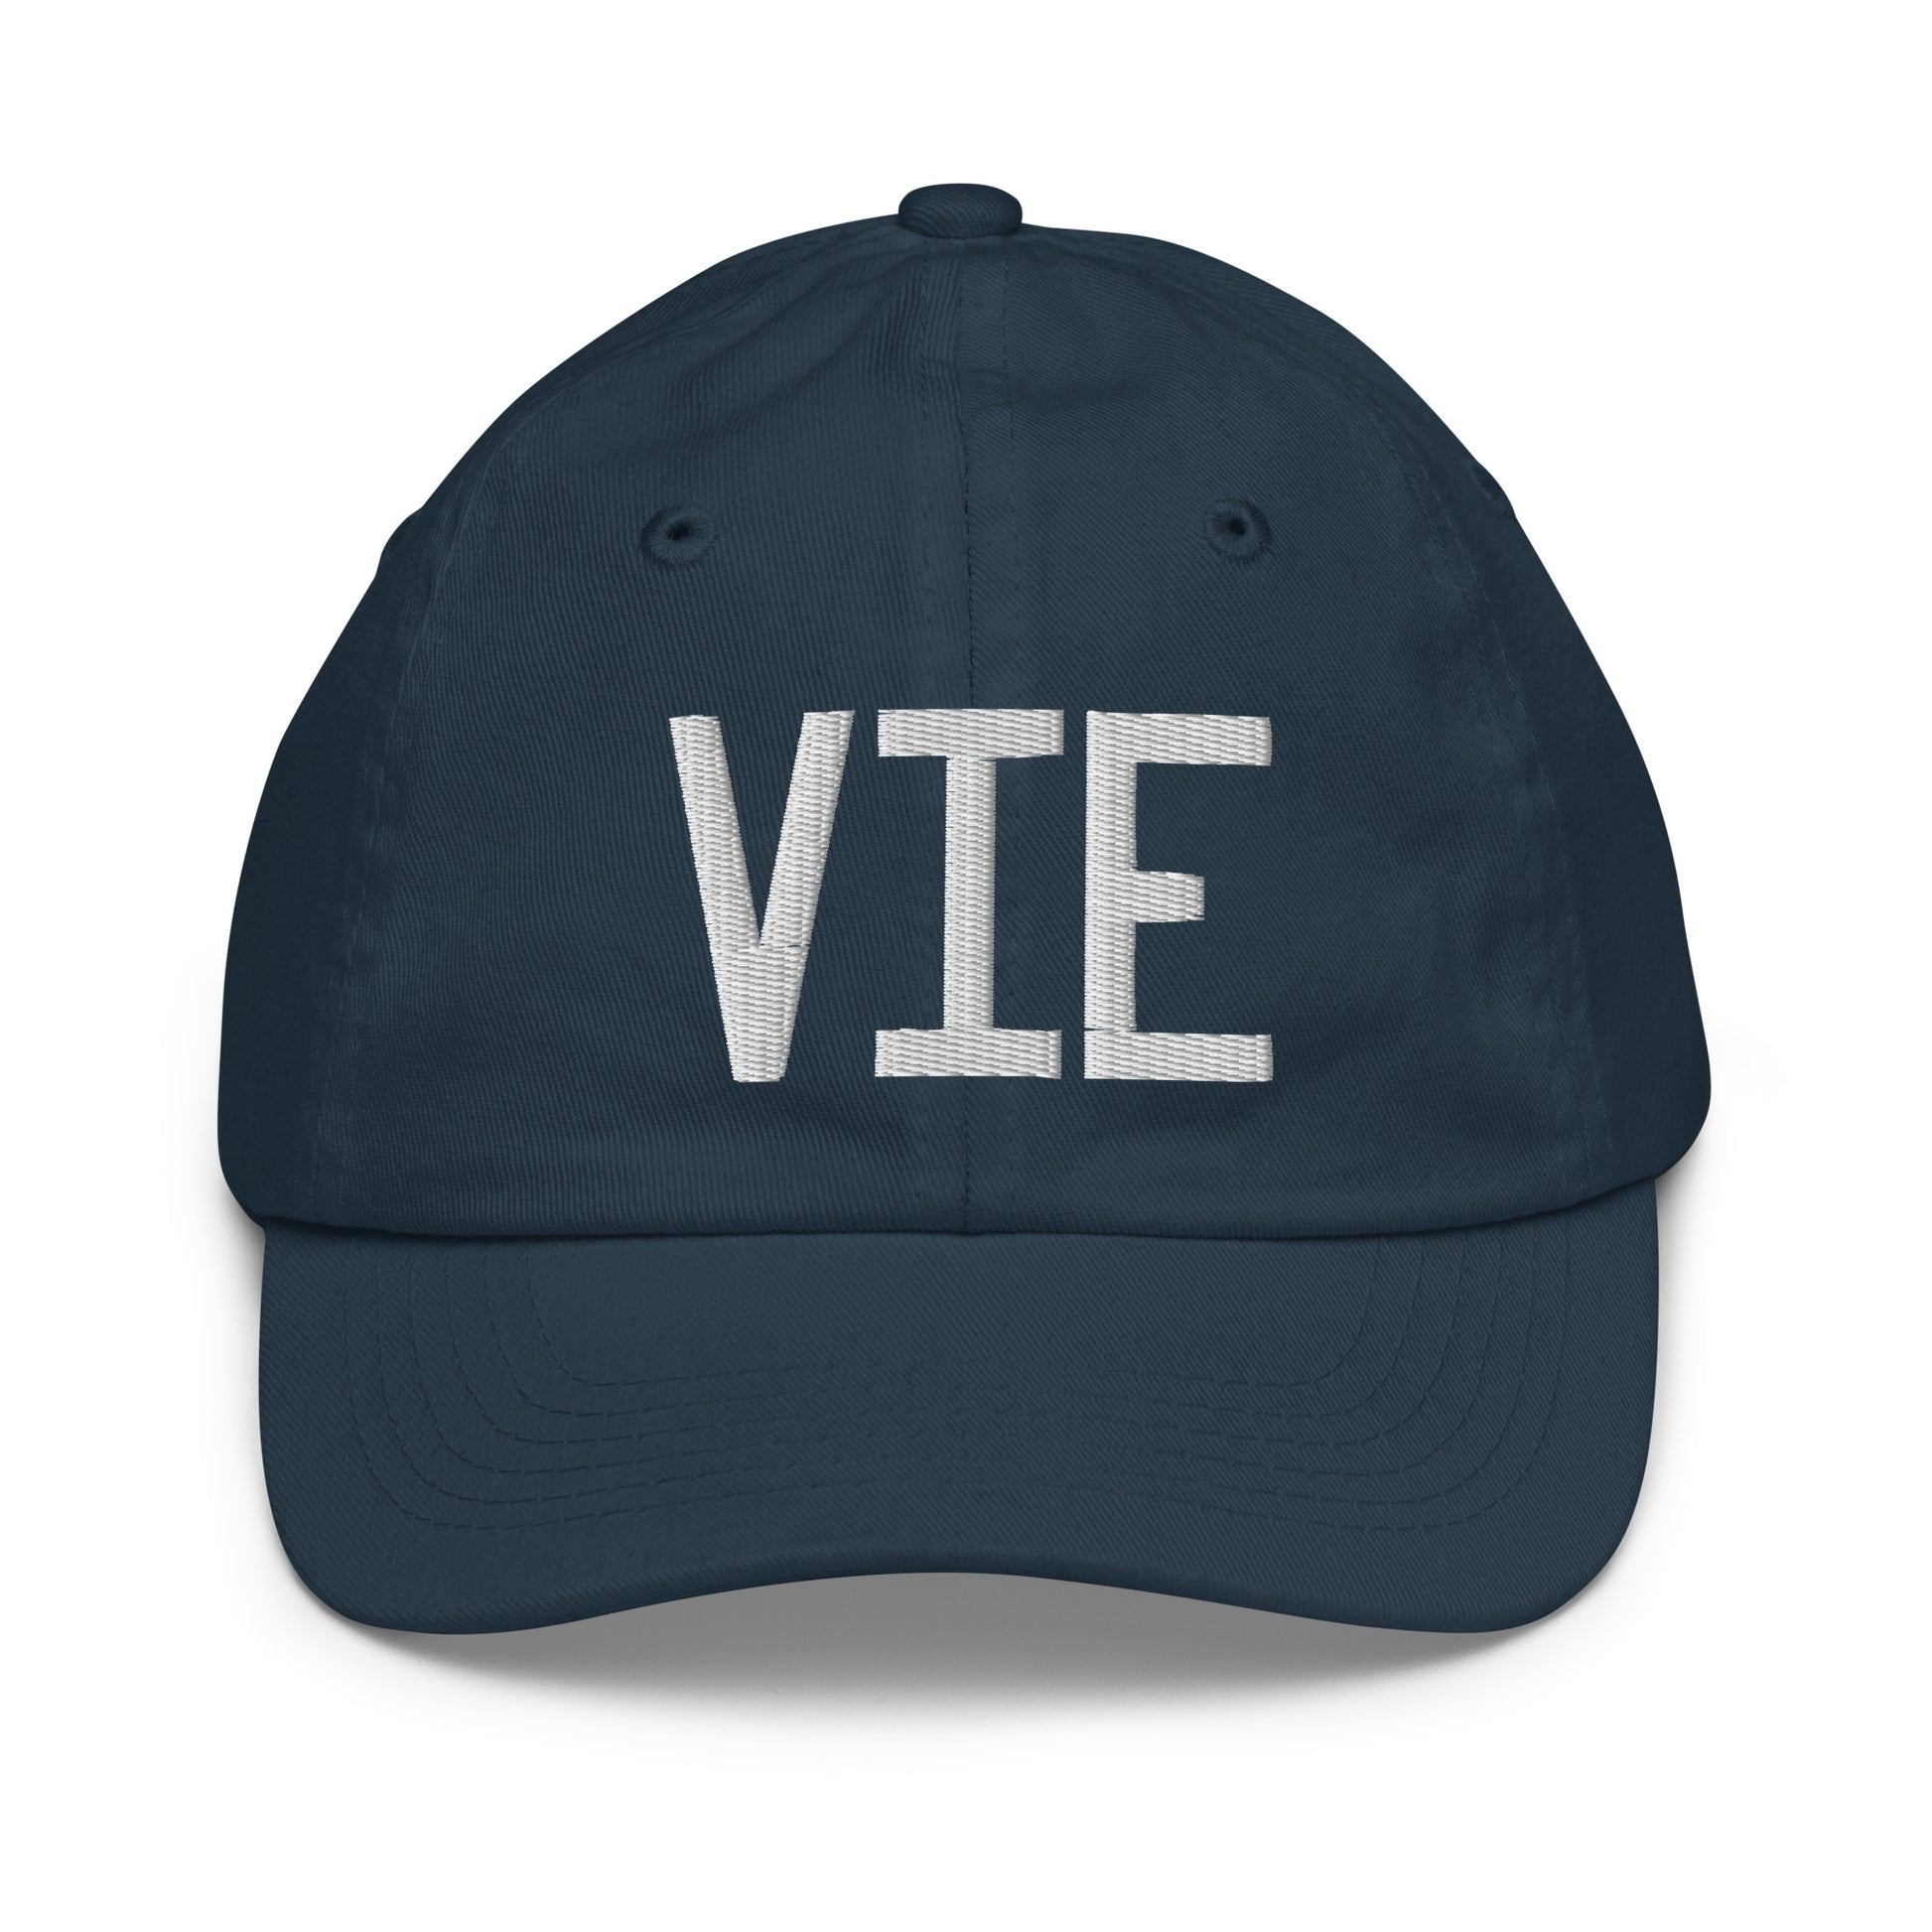 Airport Code Kid's Baseball Cap - White • VIE Vienna • YHM Designs - Image 14